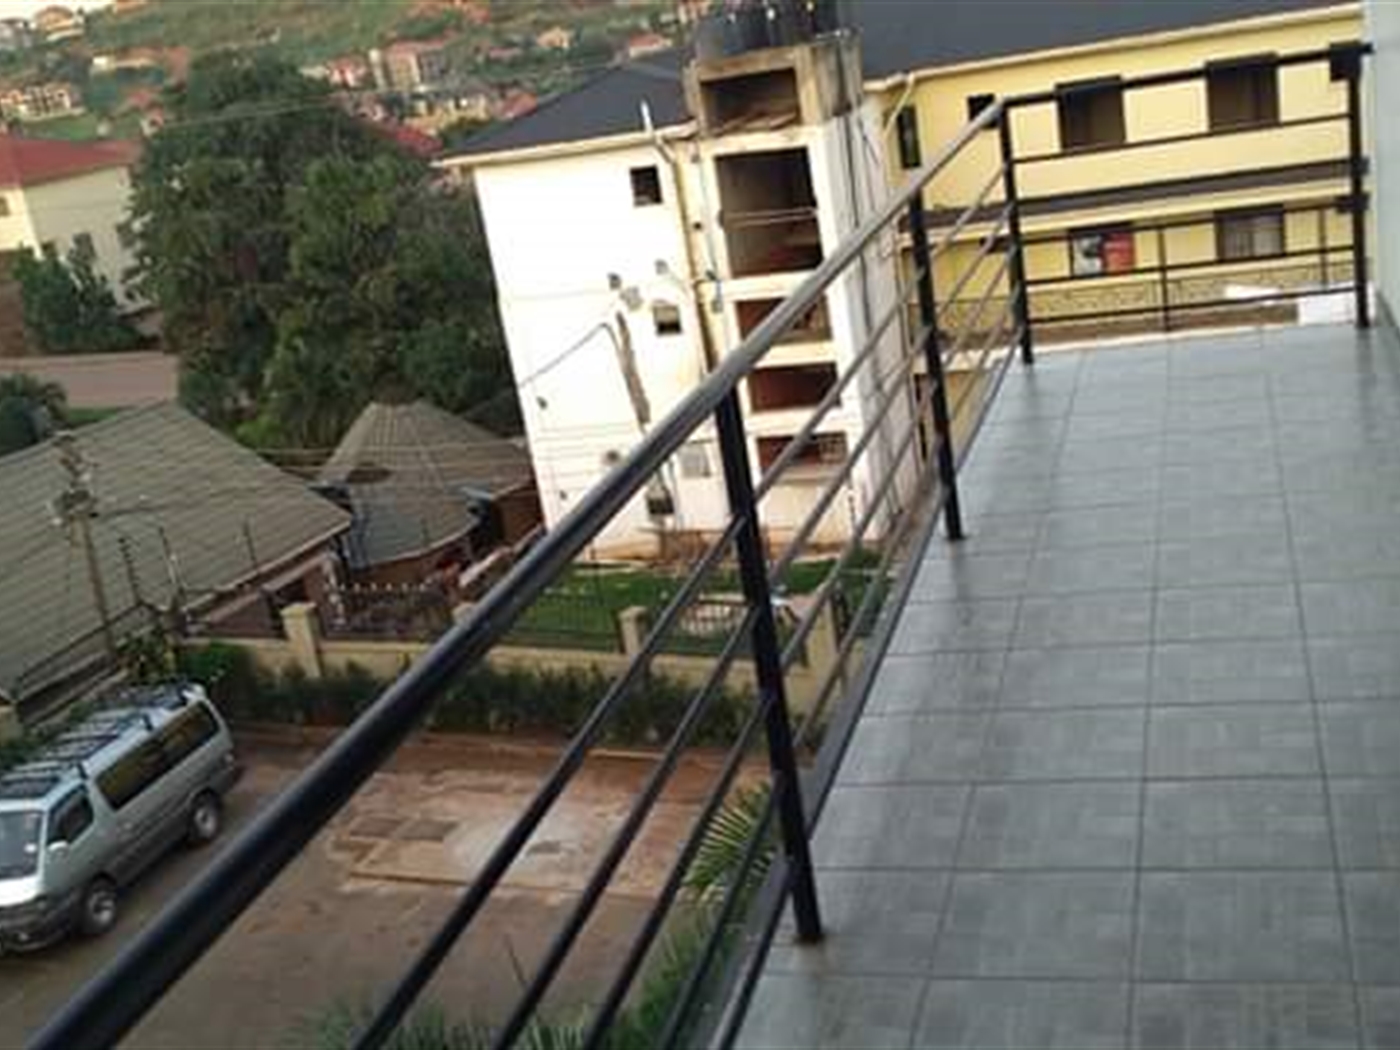 Balcony (Terrace)